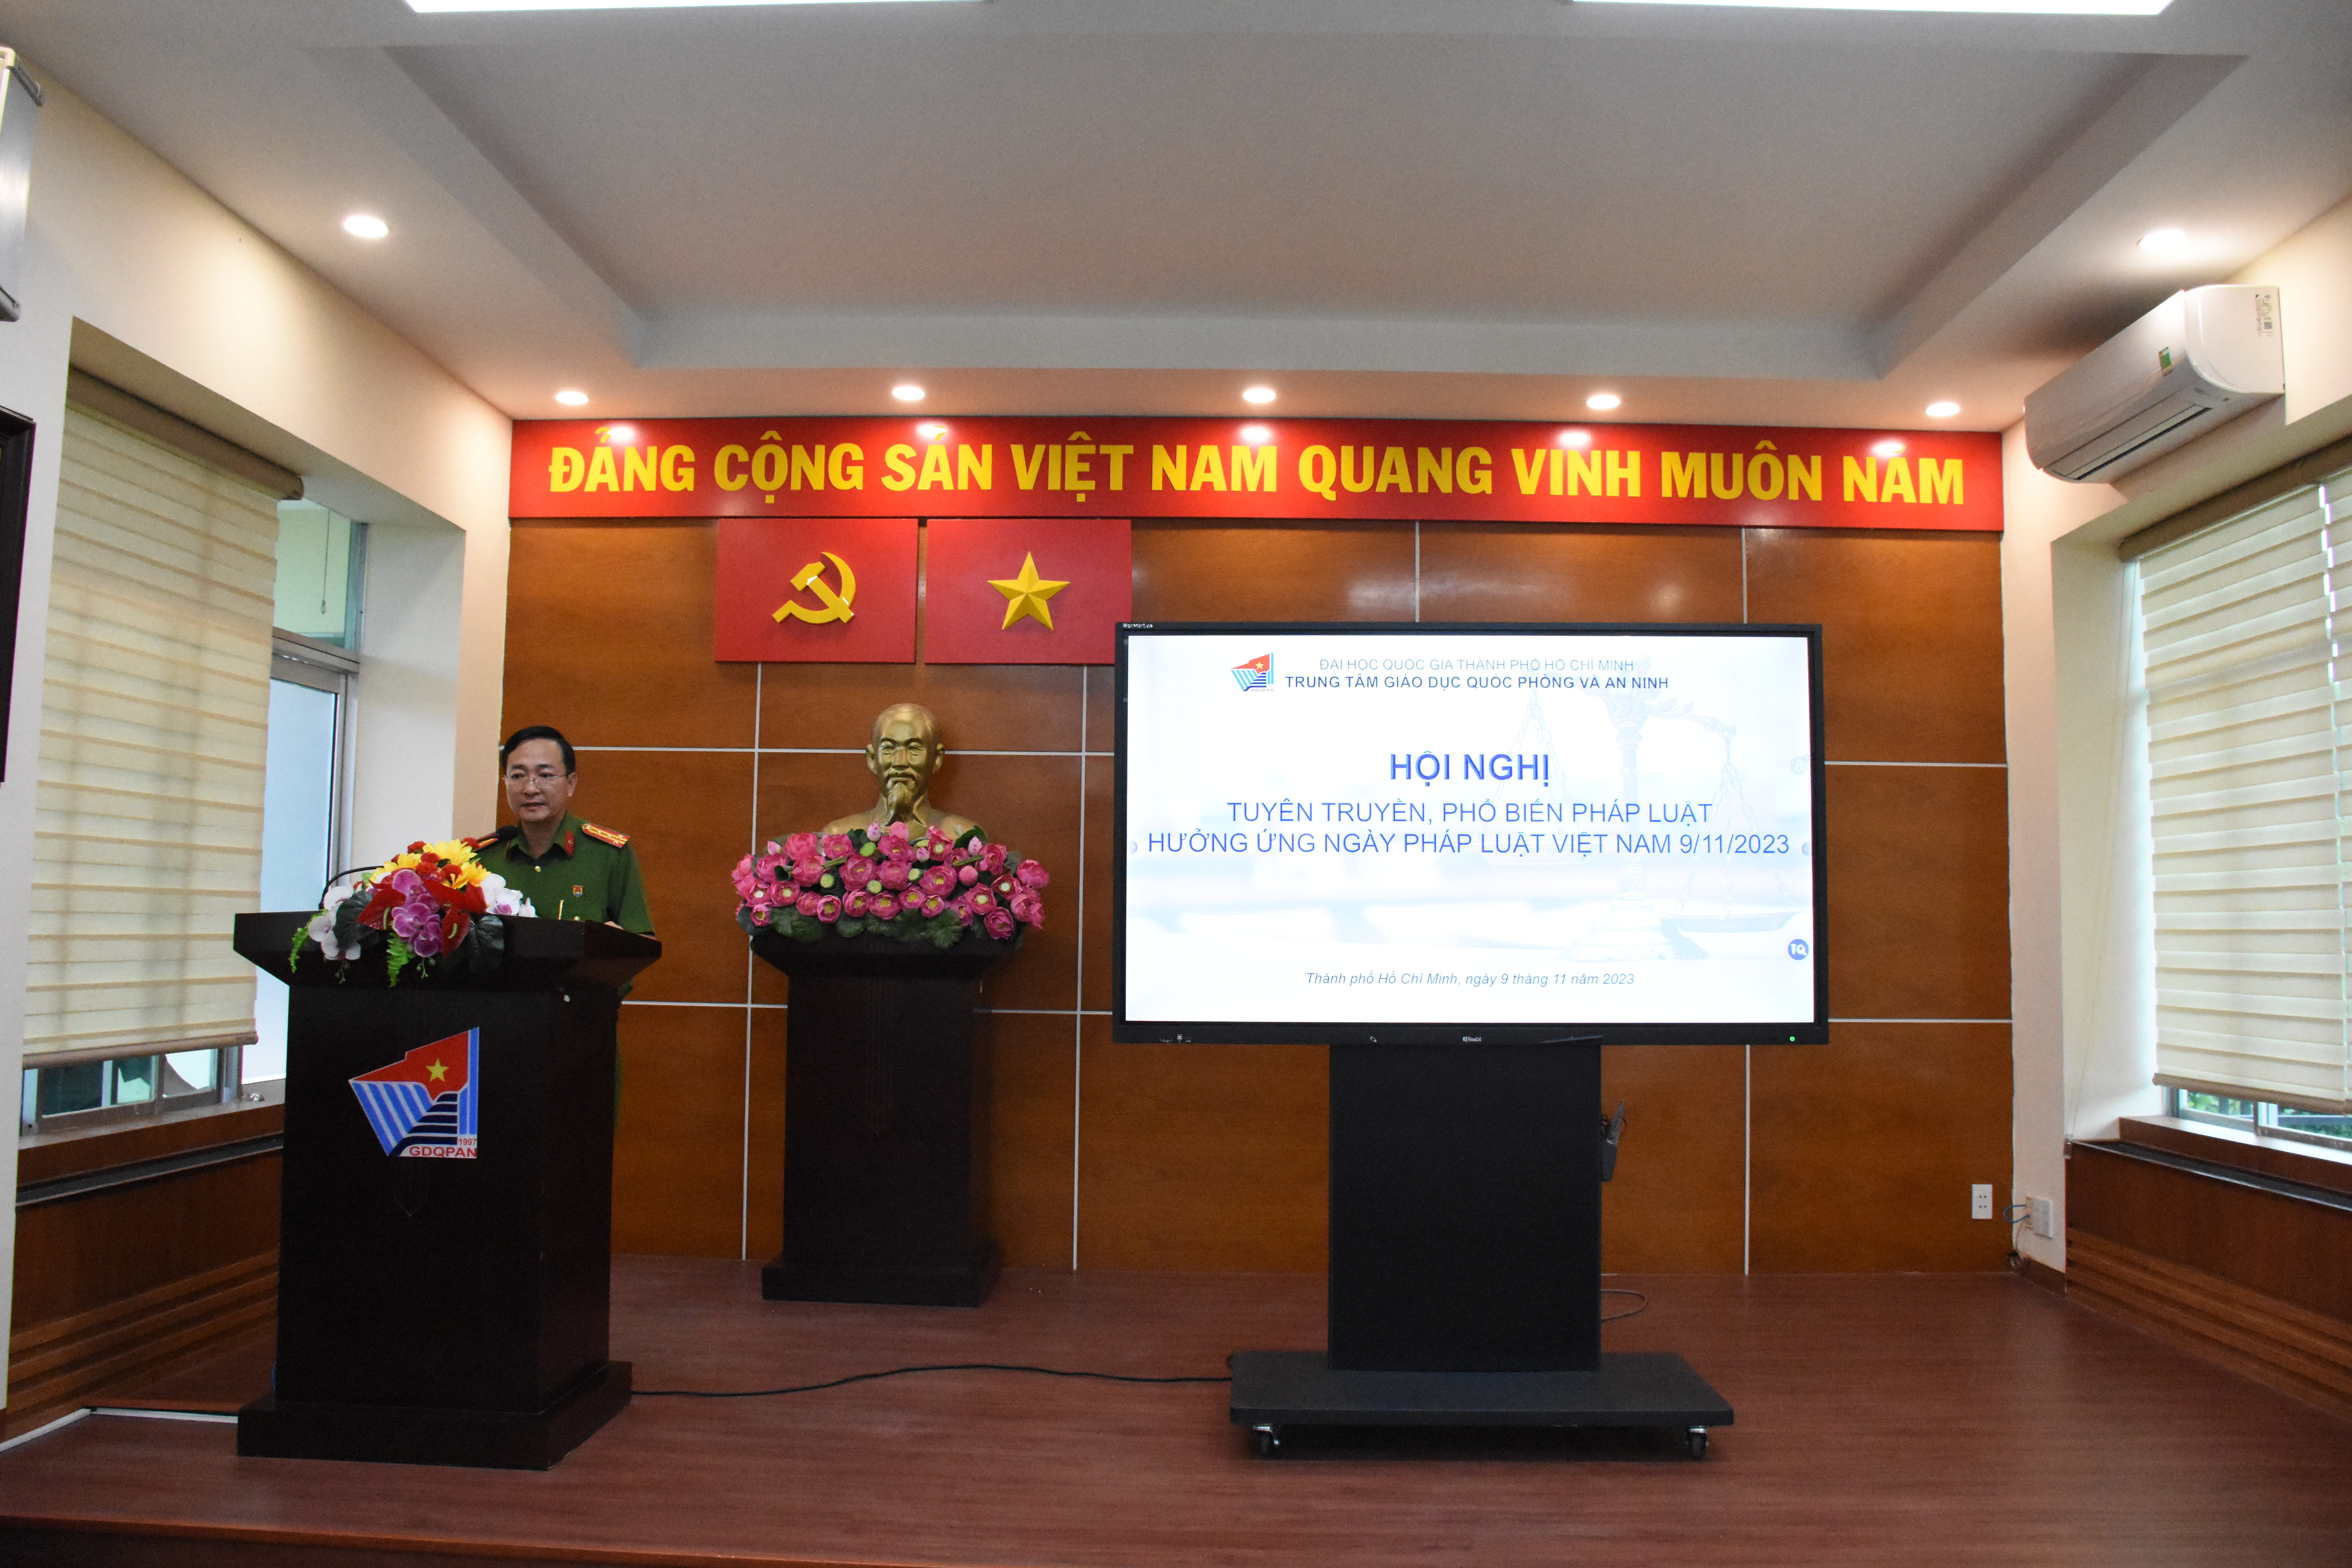 Hội nghị tuyên truyền, phổ biến pháp luật hưởng ứng Ngày Pháp luật Việt Nam 09/11/2023